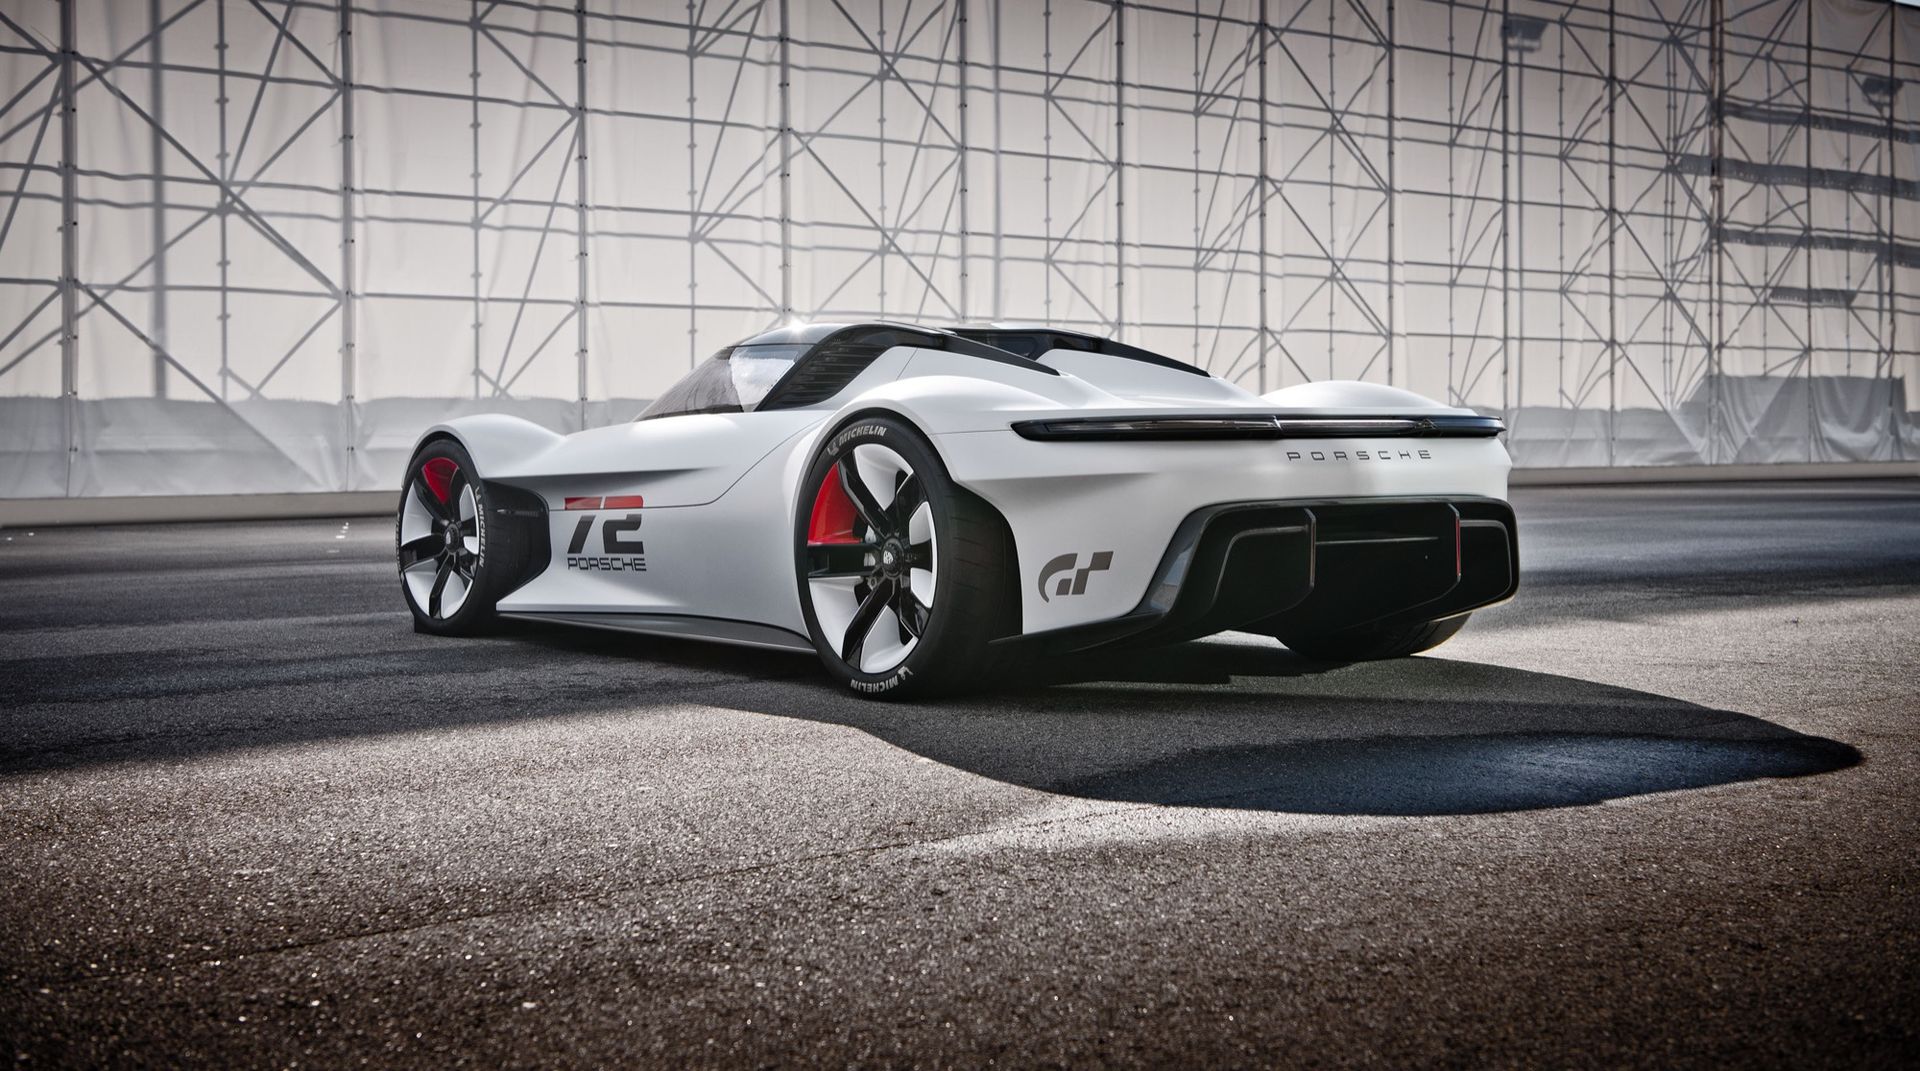 Det här är Porsche Vision Gran Turismo